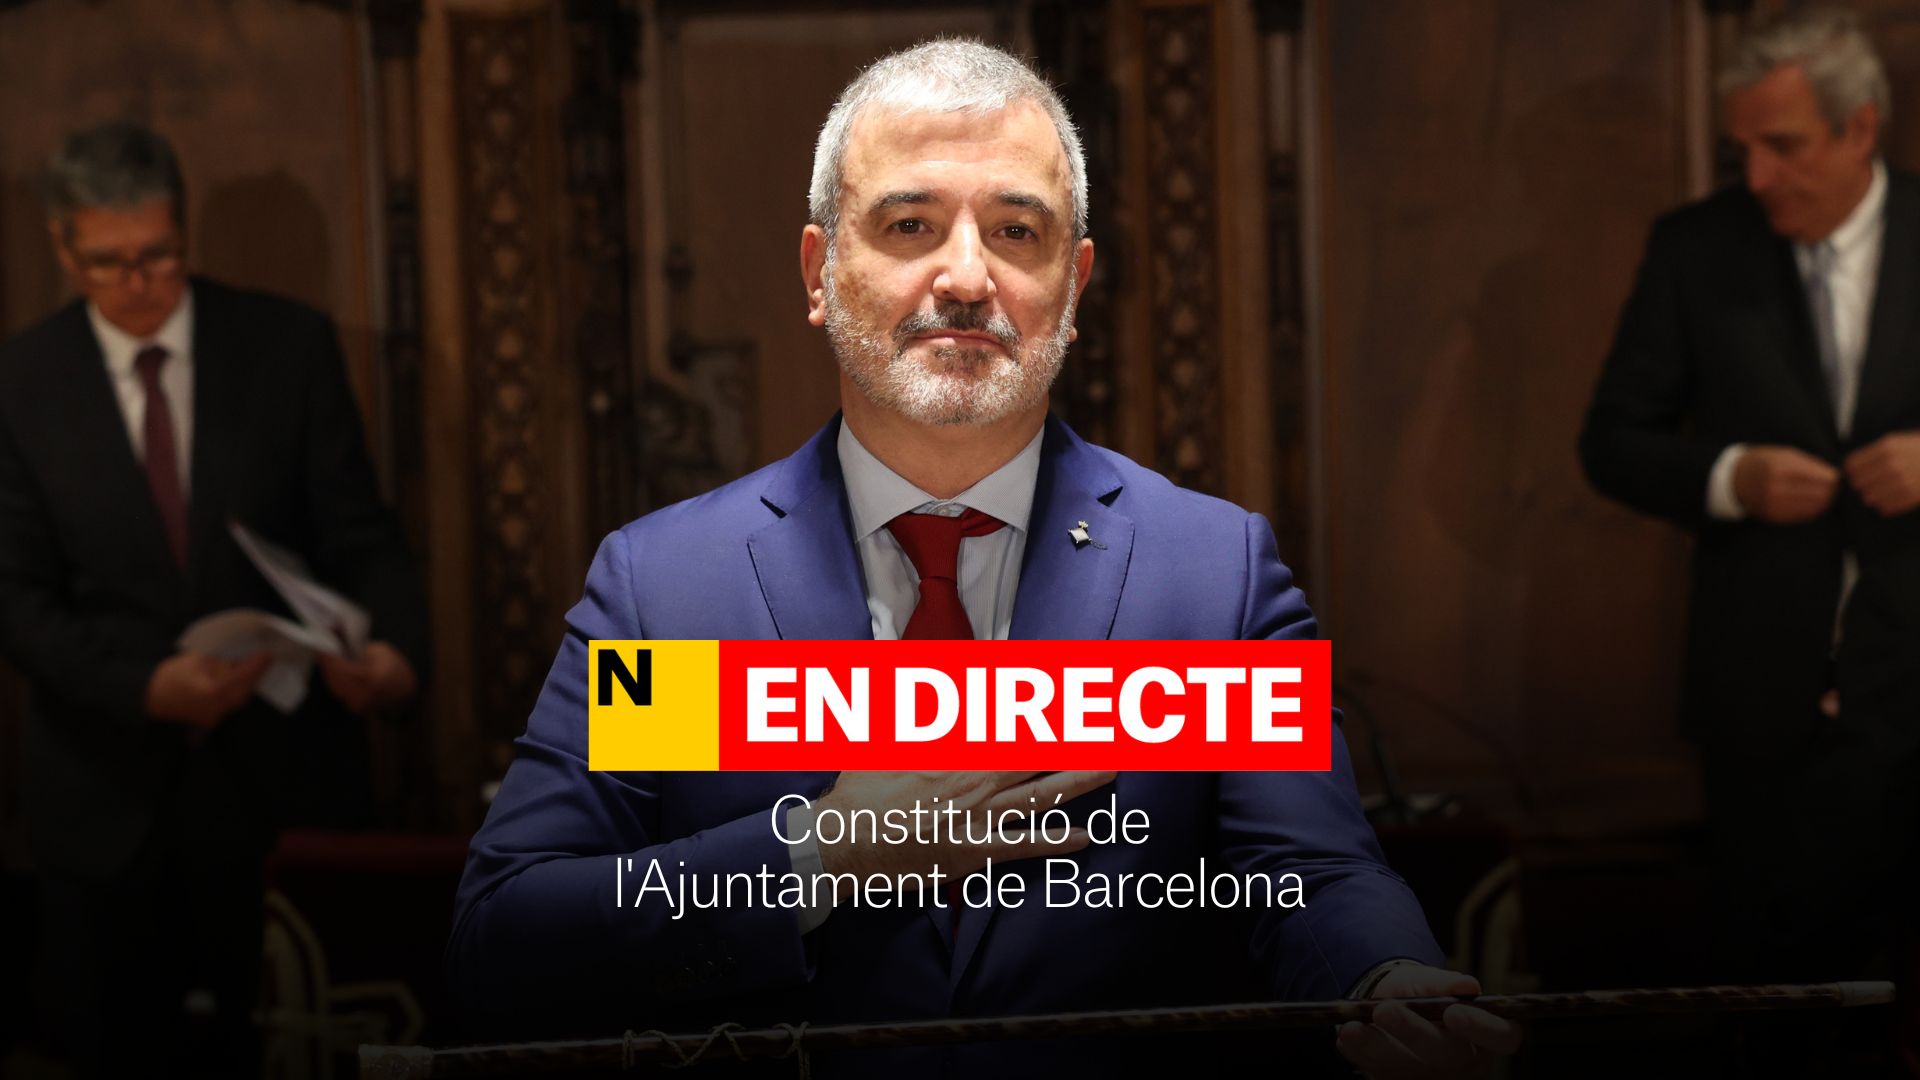 Constitució de l'Ajuntament de Barcelona, DIRECTE | Ple d'investidura i nou alcalde de la ciutat